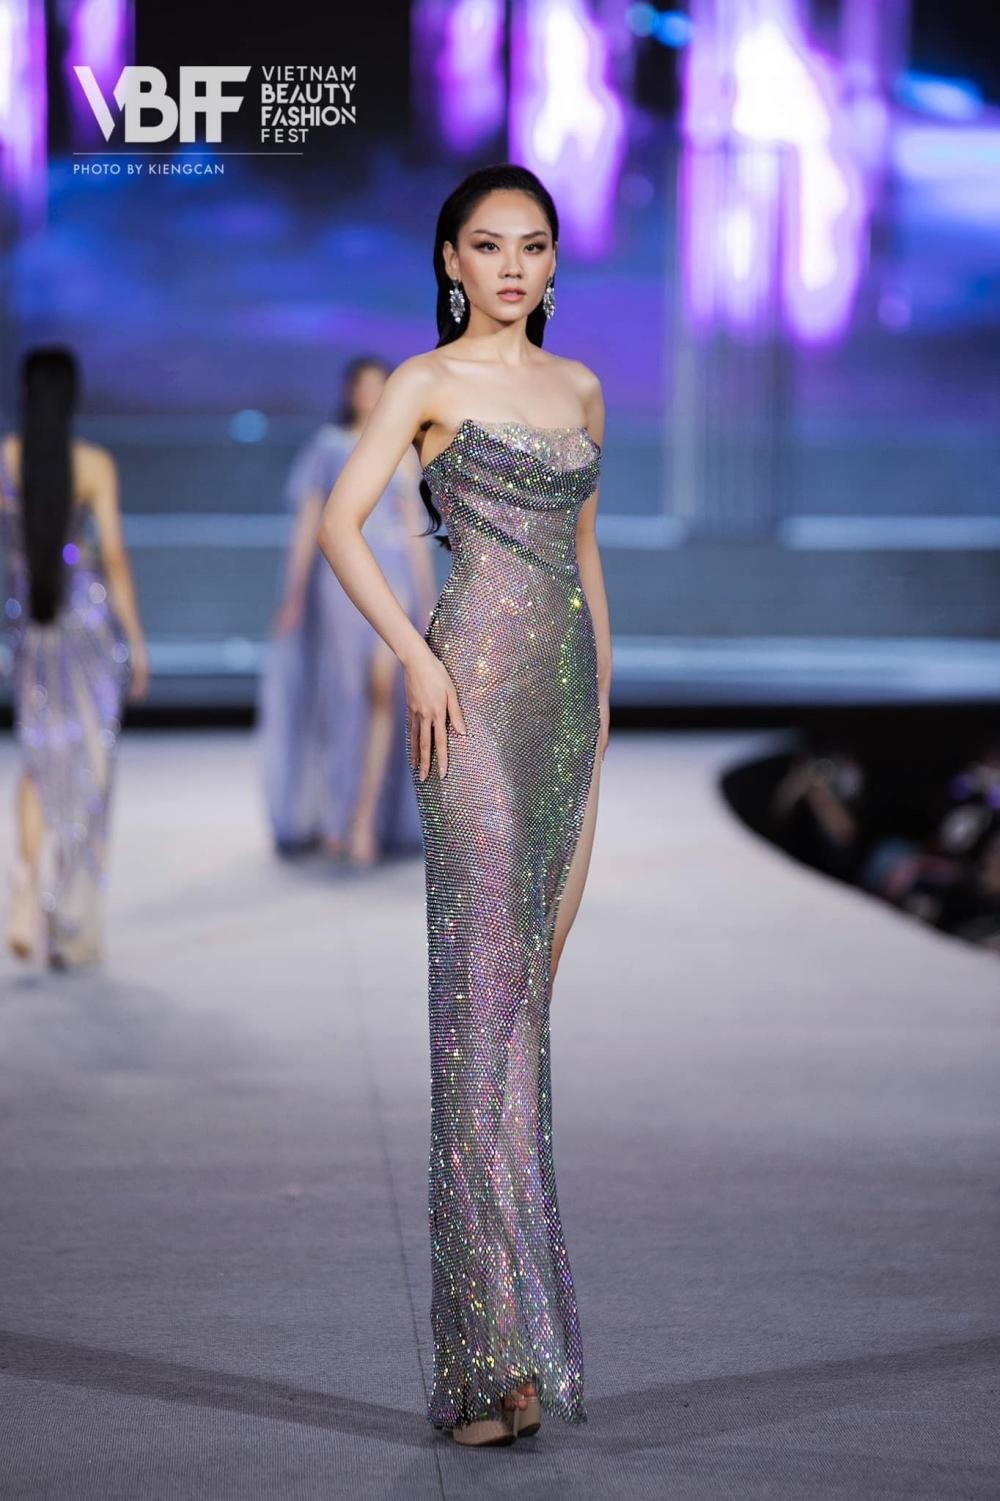 Hoa hậu Mai Phương cực khéo chọn đầm dạ hội, thiết kế nào cũng tôn dáng tuyệt đối - Ảnh 4.